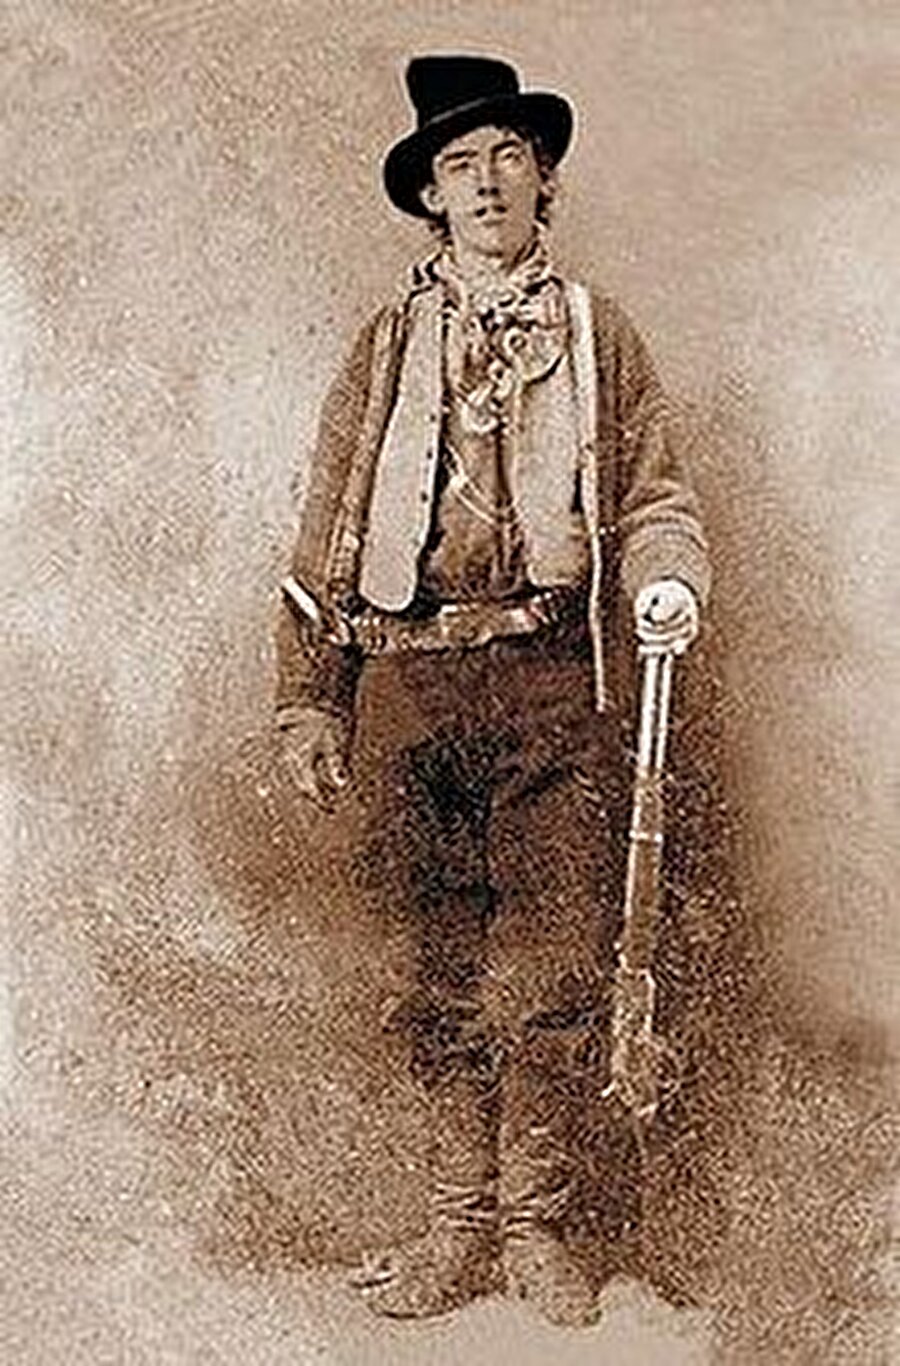 Fotoğraf sıradan birine ait değil.
Fotoğraftaki kişi Amerika'nın 1800'lü yıllarında yaşamış seri katillerinden “Billy the Kid”.